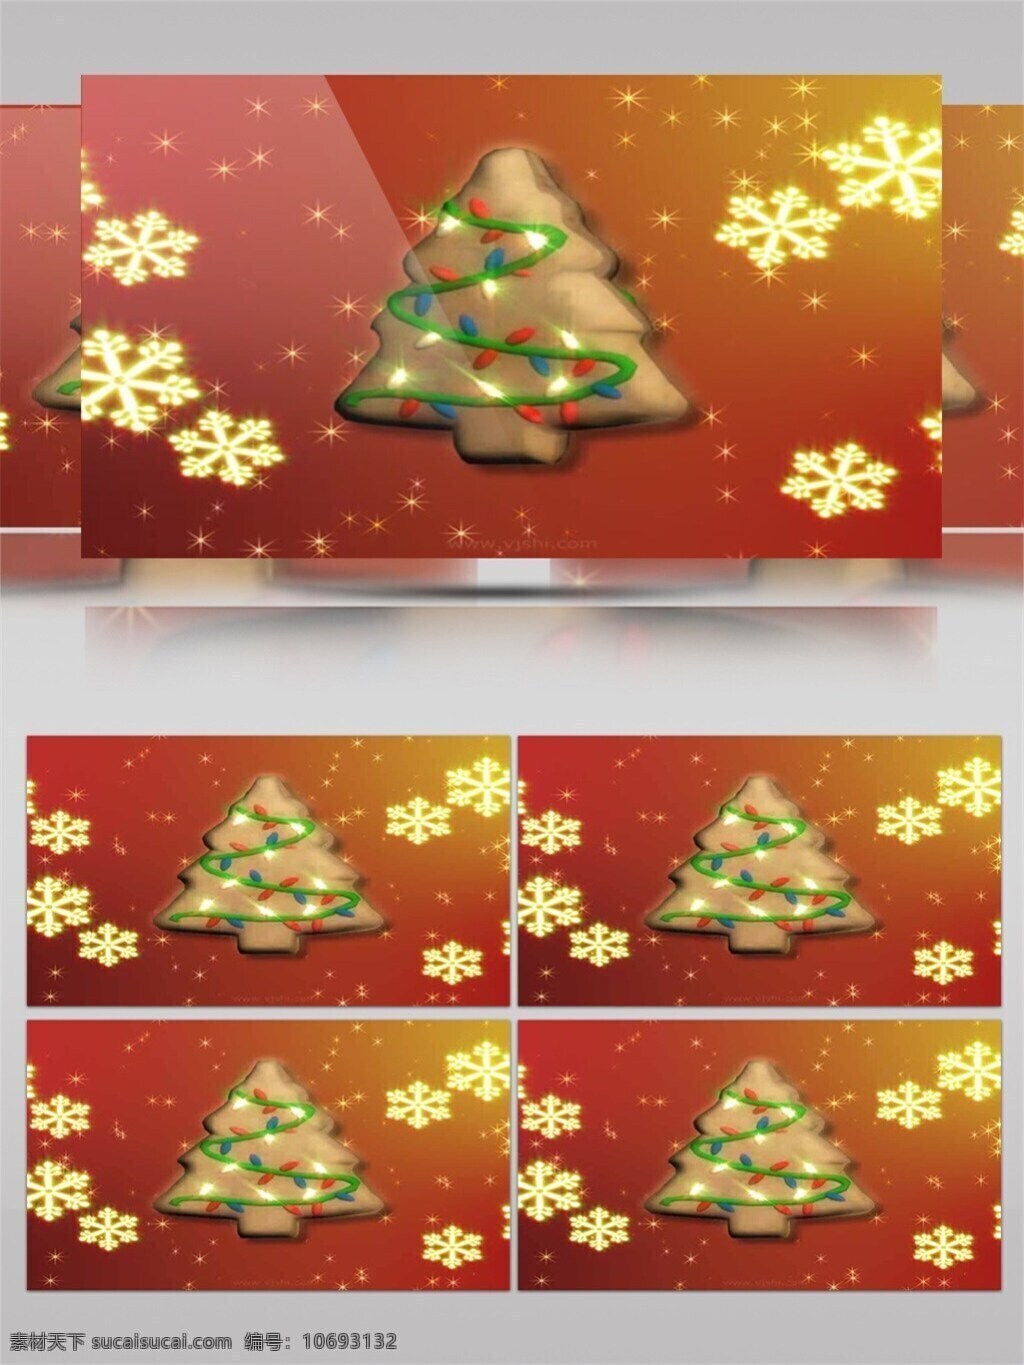 圣诞树 装饰 圣诞节 视频 节日壁纸 节日 特效 飘落雪花 雪花圣诞树